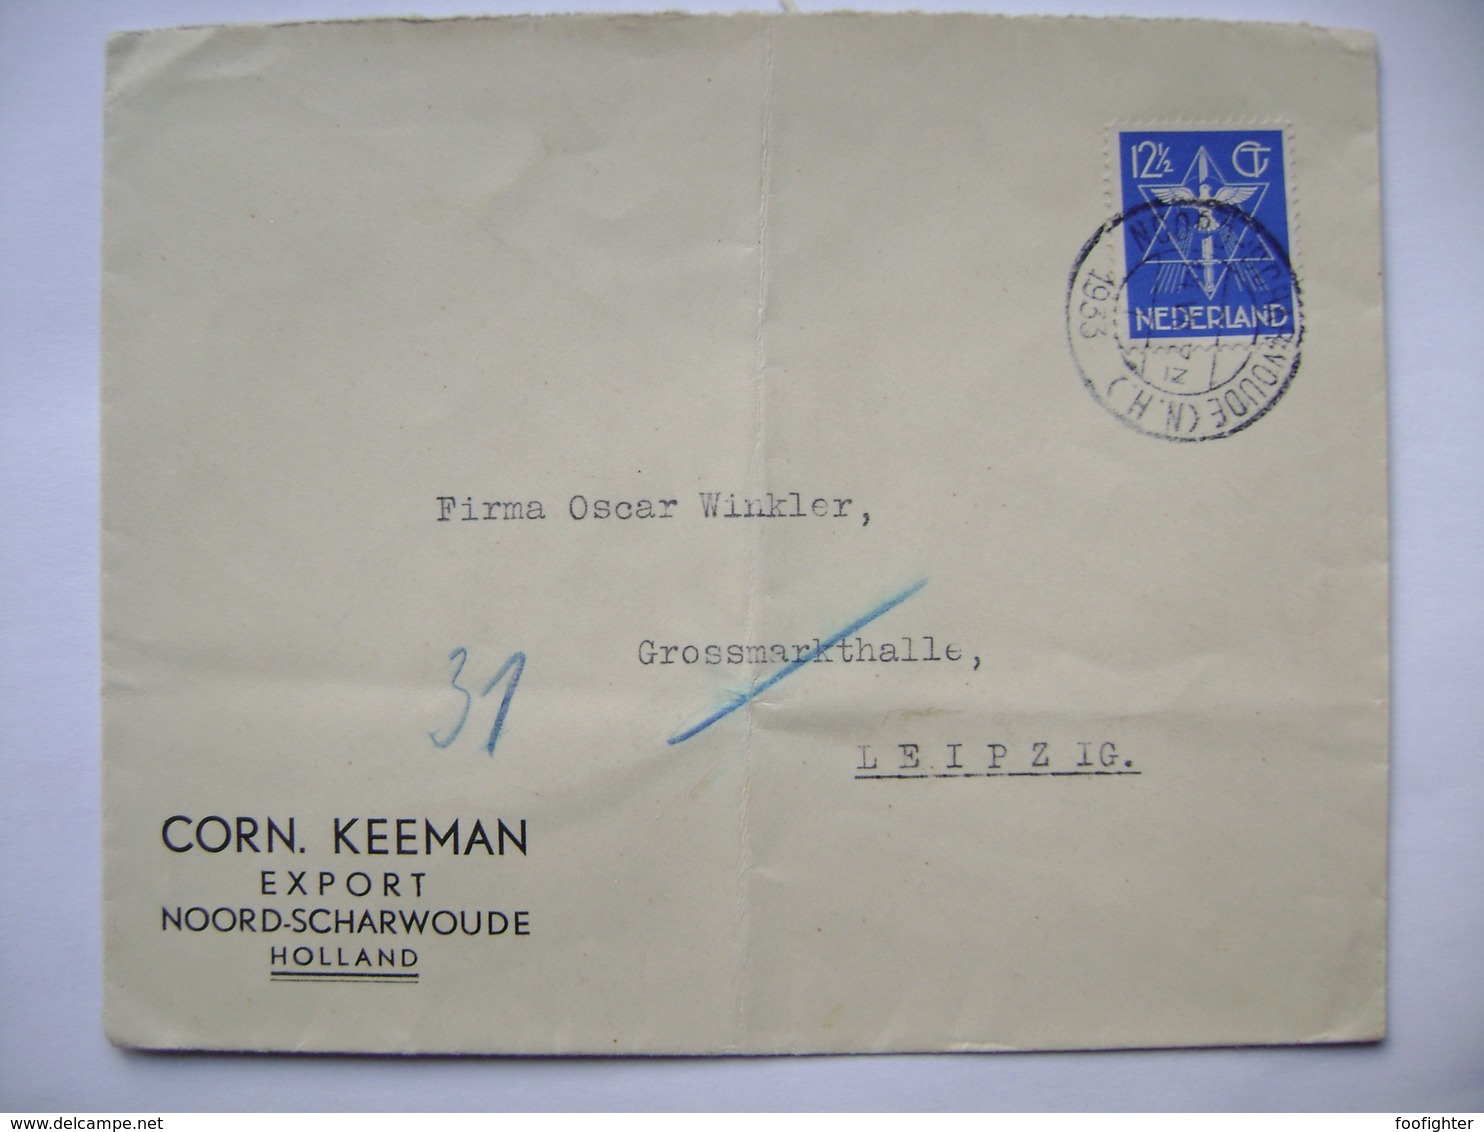 Netherlands Cover 1933 Corn. Keeman Export NOORD-SCHARWOUDE - To Leipzig Germany, 12 1/2 Ct. - Brieven En Documenten